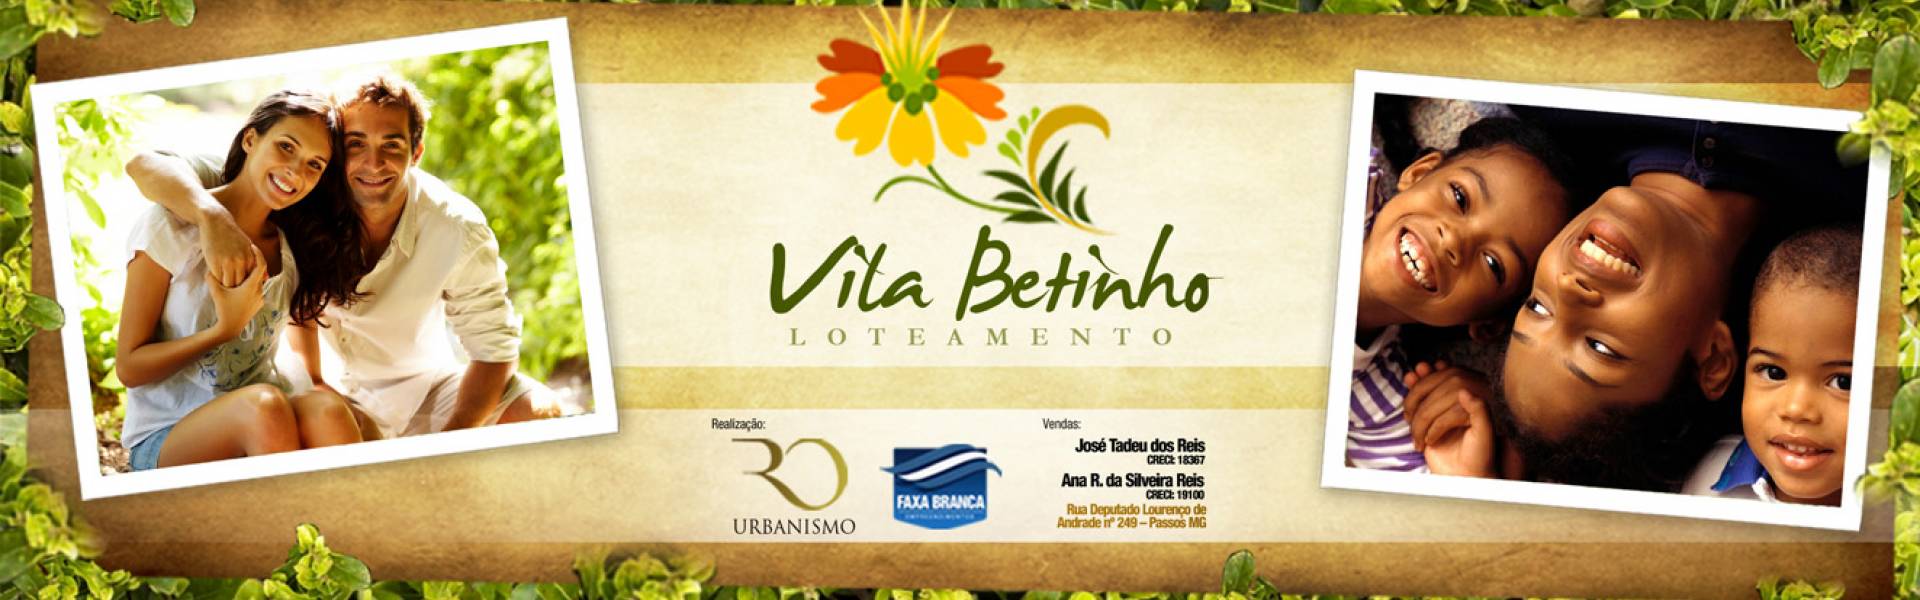 Banner Chamada do imóvel Vila Betinho